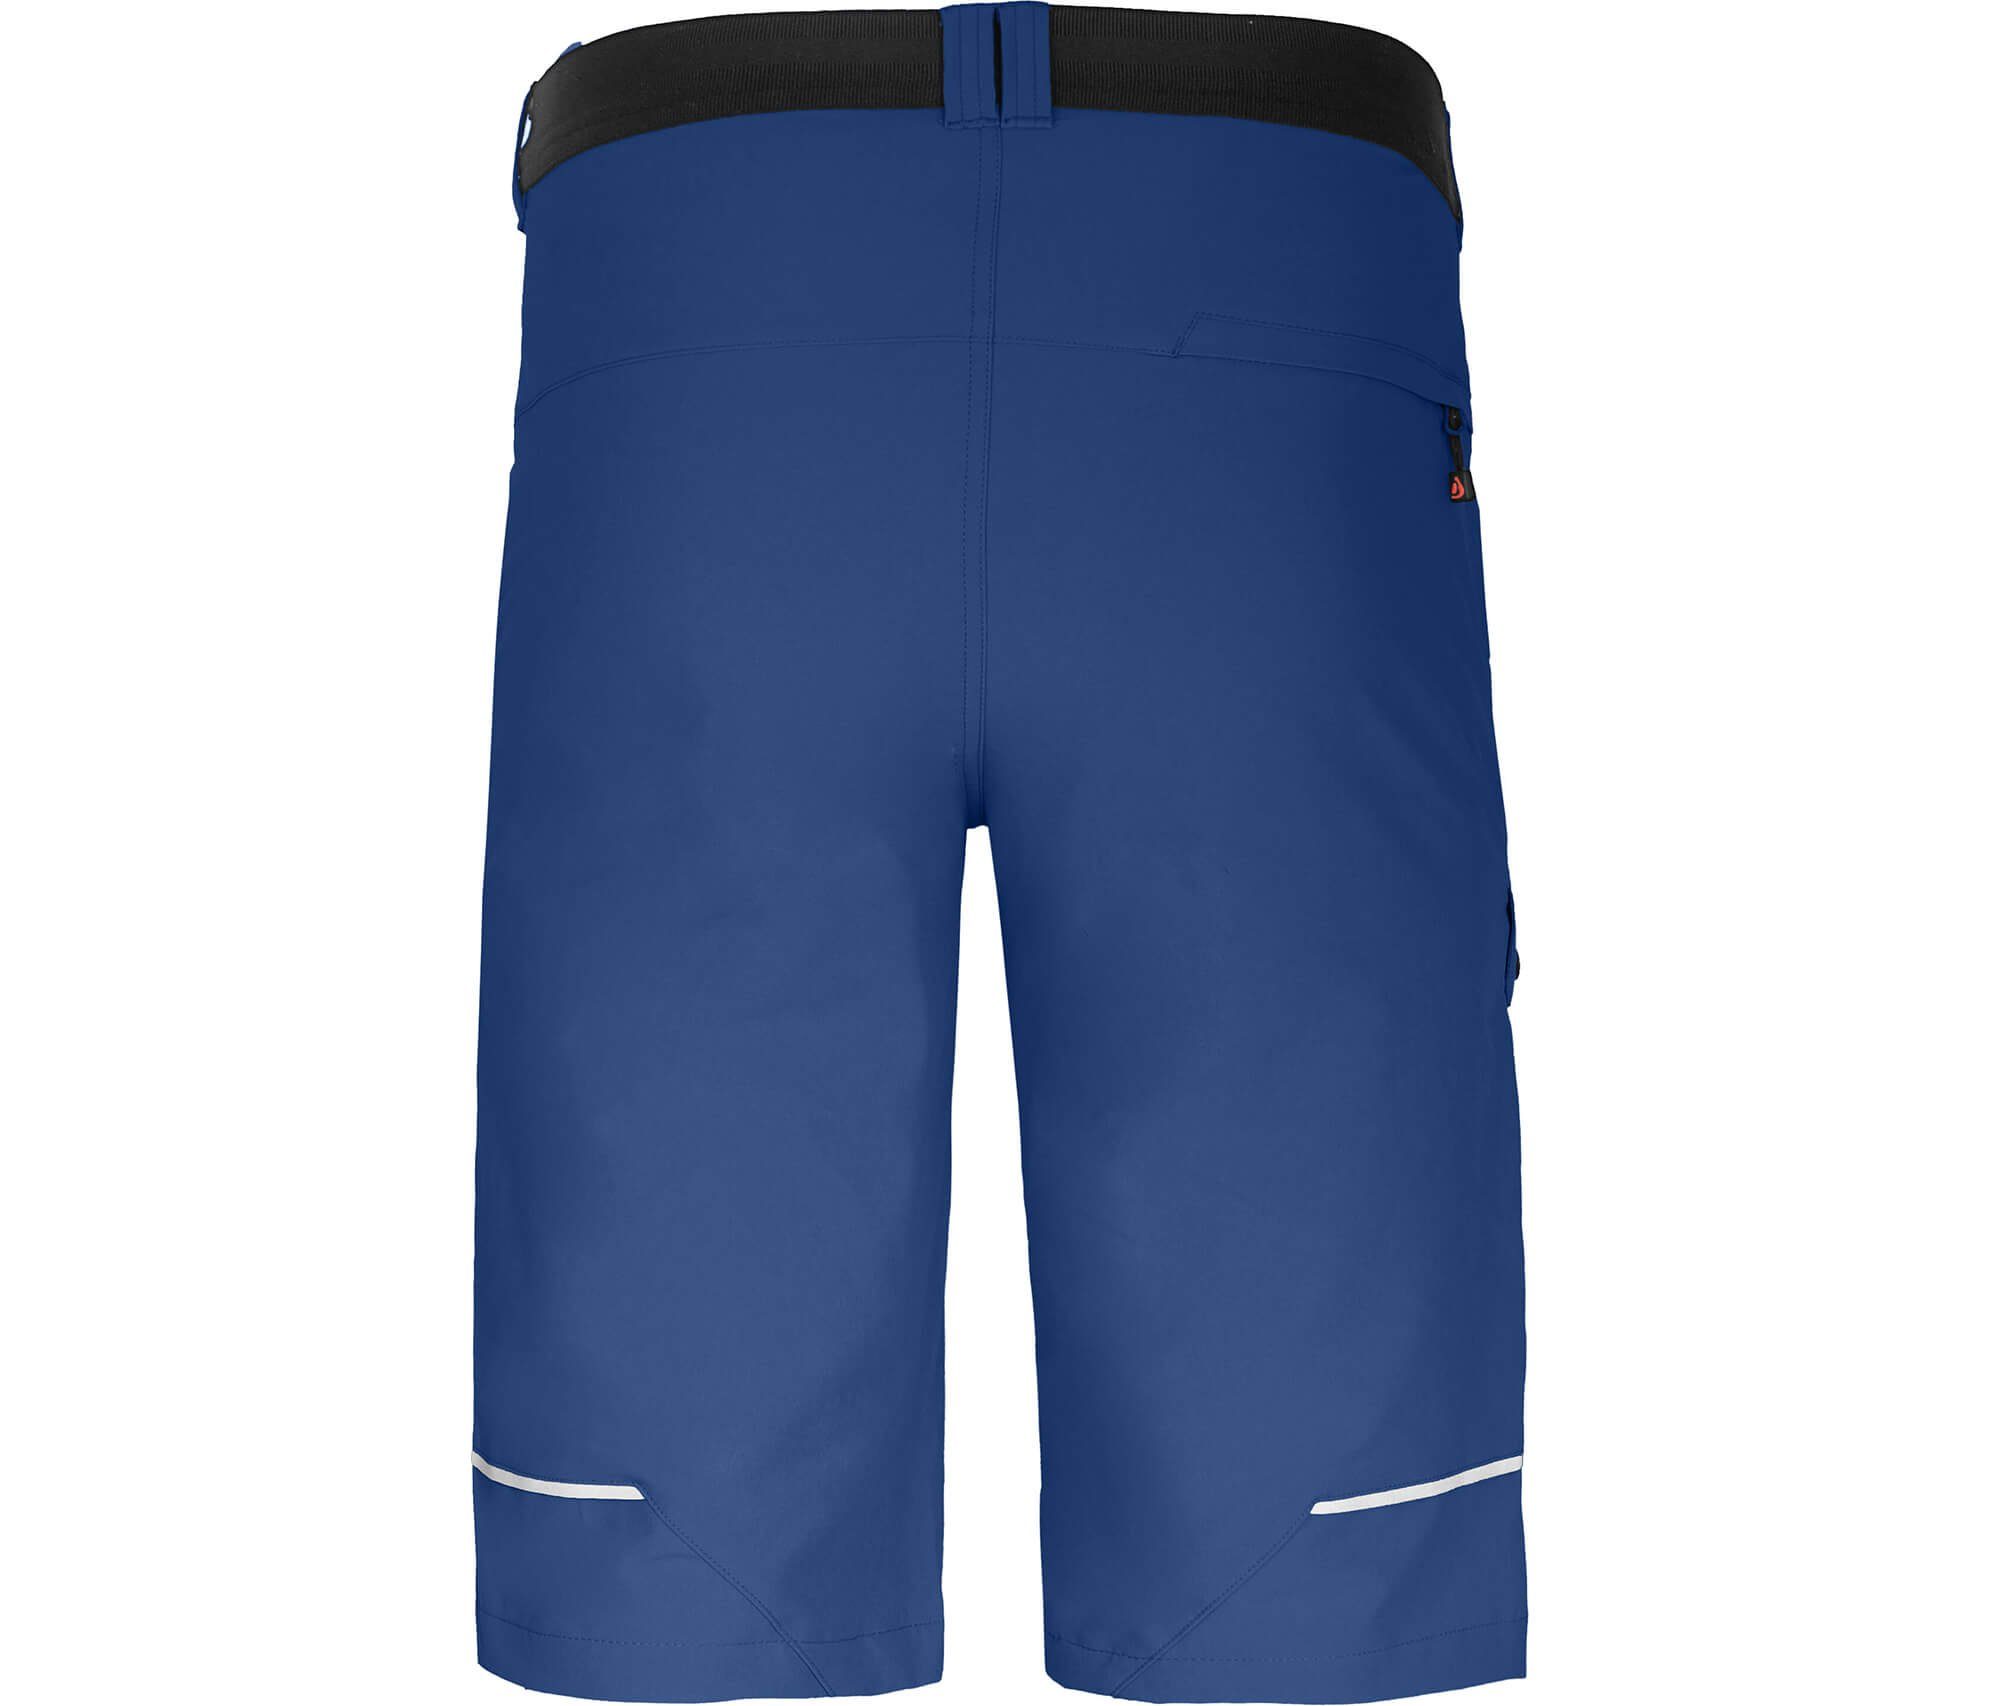 Bergson Outdoorhose Bermuda elastisch, Taschen, Normalgrößen 8 Herren Wandershorts, recycelt, FROSLEV blau